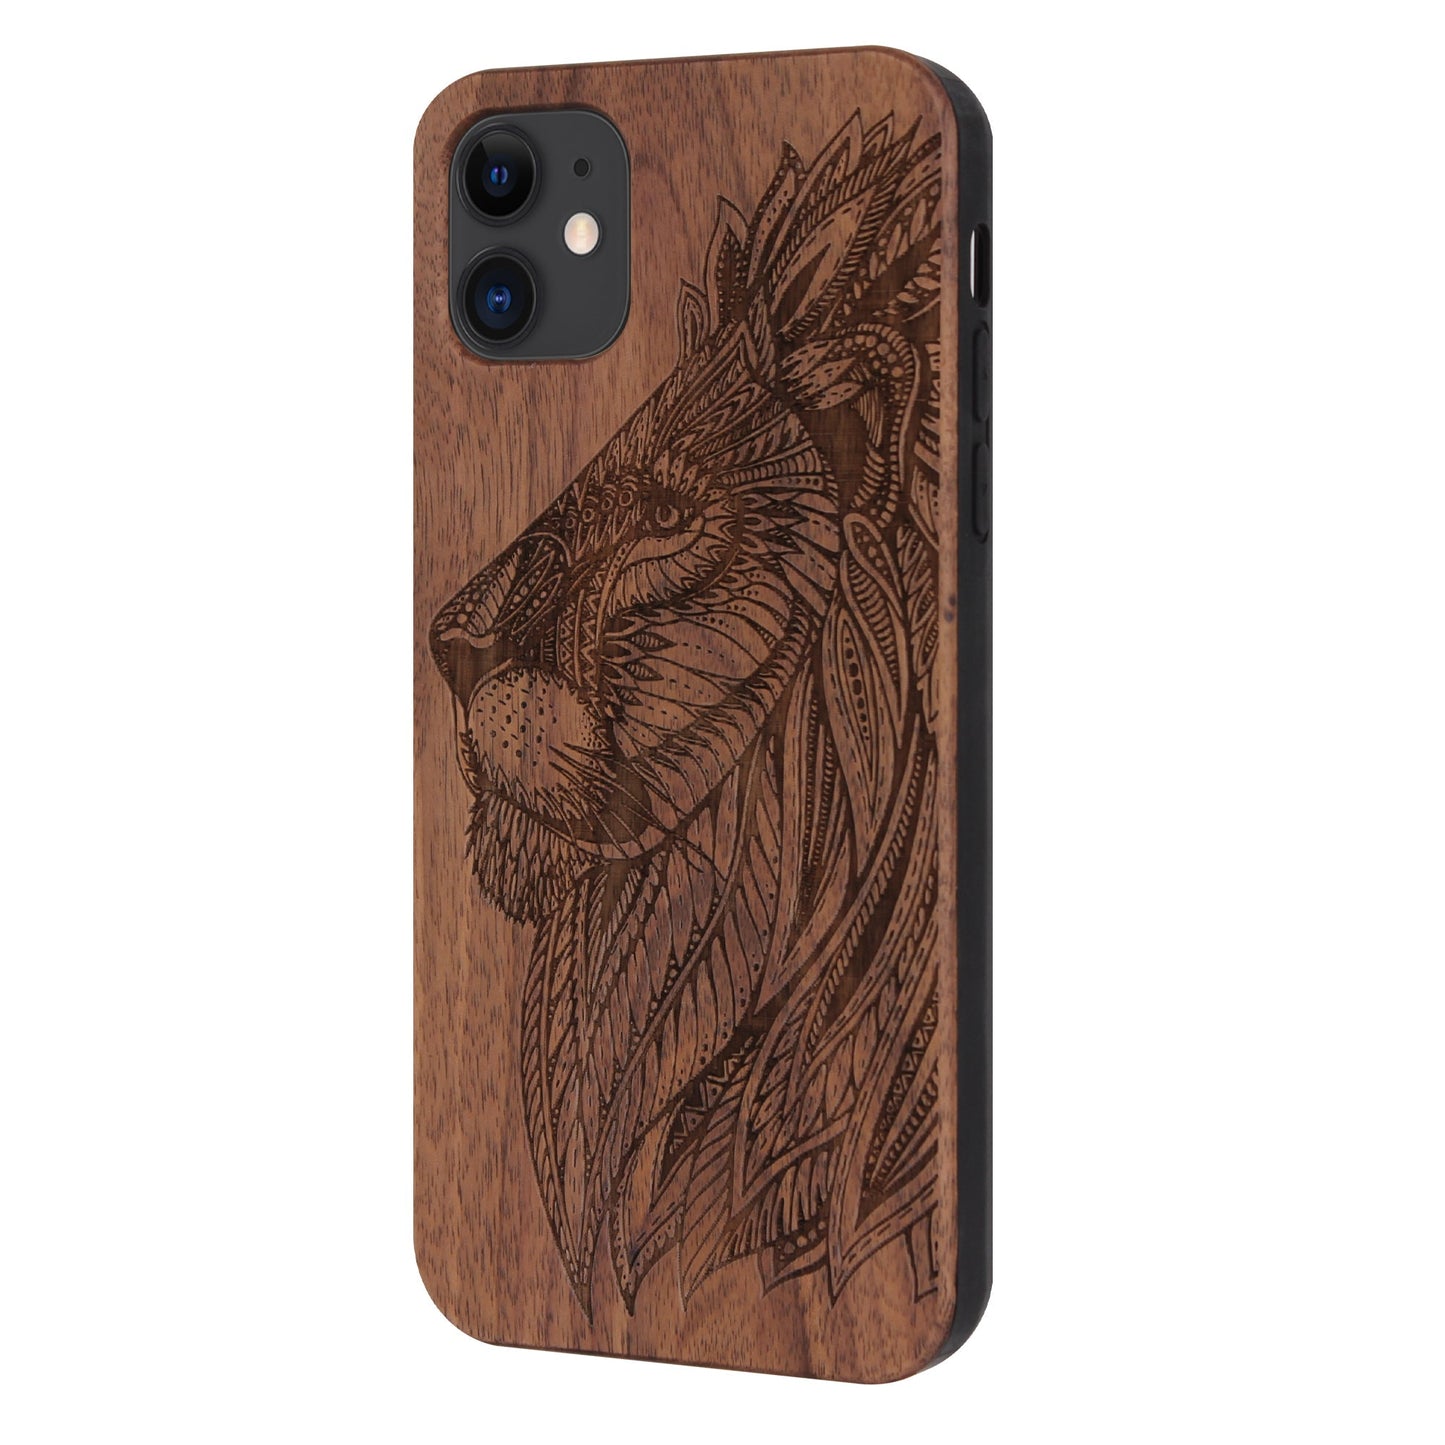 Walnut lion Eden case for iPhone 11 